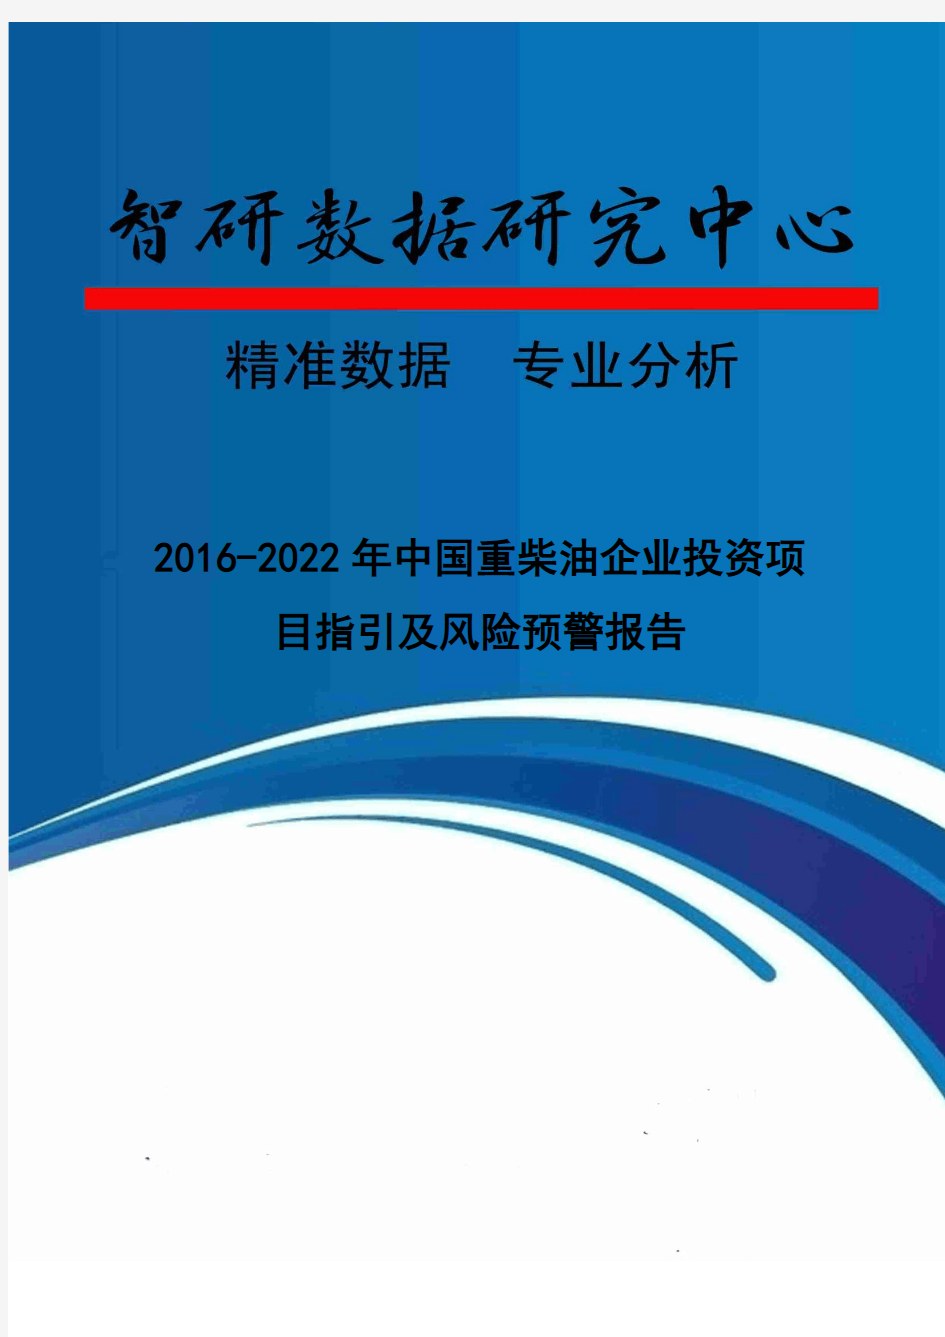 2016-2022年中国重柴油企业投资项目指引及风险预警报告